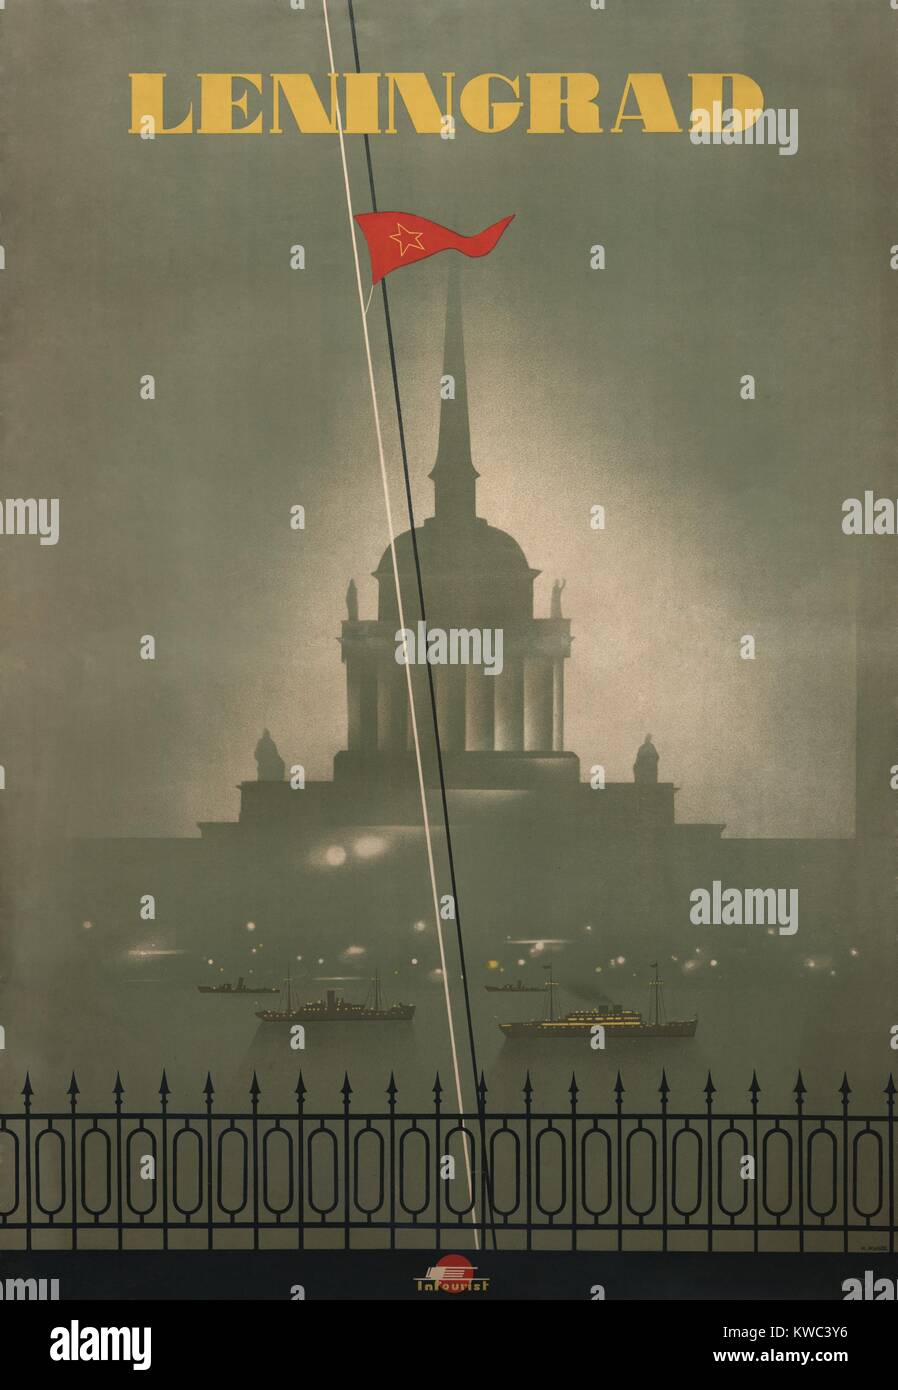 1950 Plakat für Leningrad, heute St. Petersburg reisen. Bild zeigt Russische Admiralty Building mit Schiffen auf der Newa. (BSLOC 2015 14 213) Stockfoto